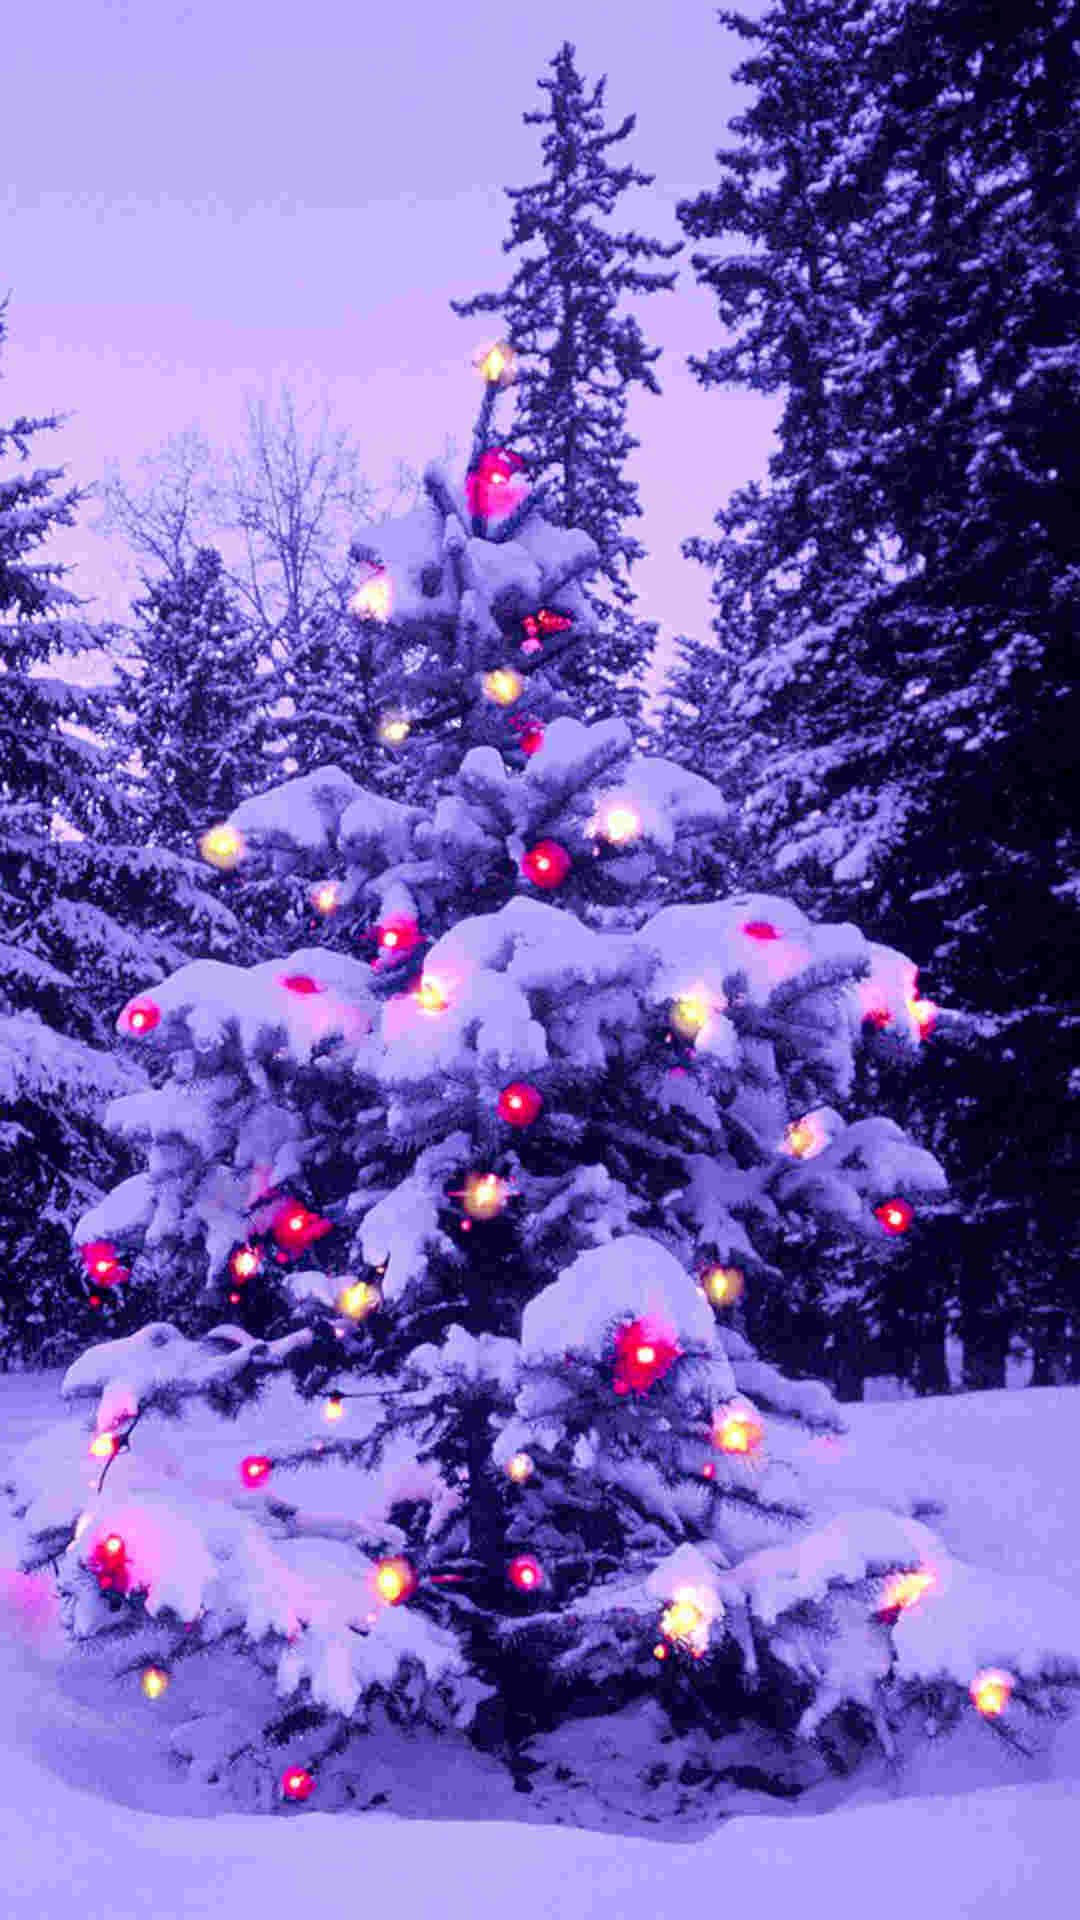 Mùa Giáng Sinh lại đến rồi! Hãy thu hút tinh thần lễ hội đến thật gần với những hình nền Giáng Sinh cho iPhone đầy lãng mạn và ánh sáng lung linh. Sự kết hợp hoàn hảo giữa hình ảnh ấm áp và màu sắc rực rỡ sẽ mang lại cho bạn cảm giác thật ấn tượng!